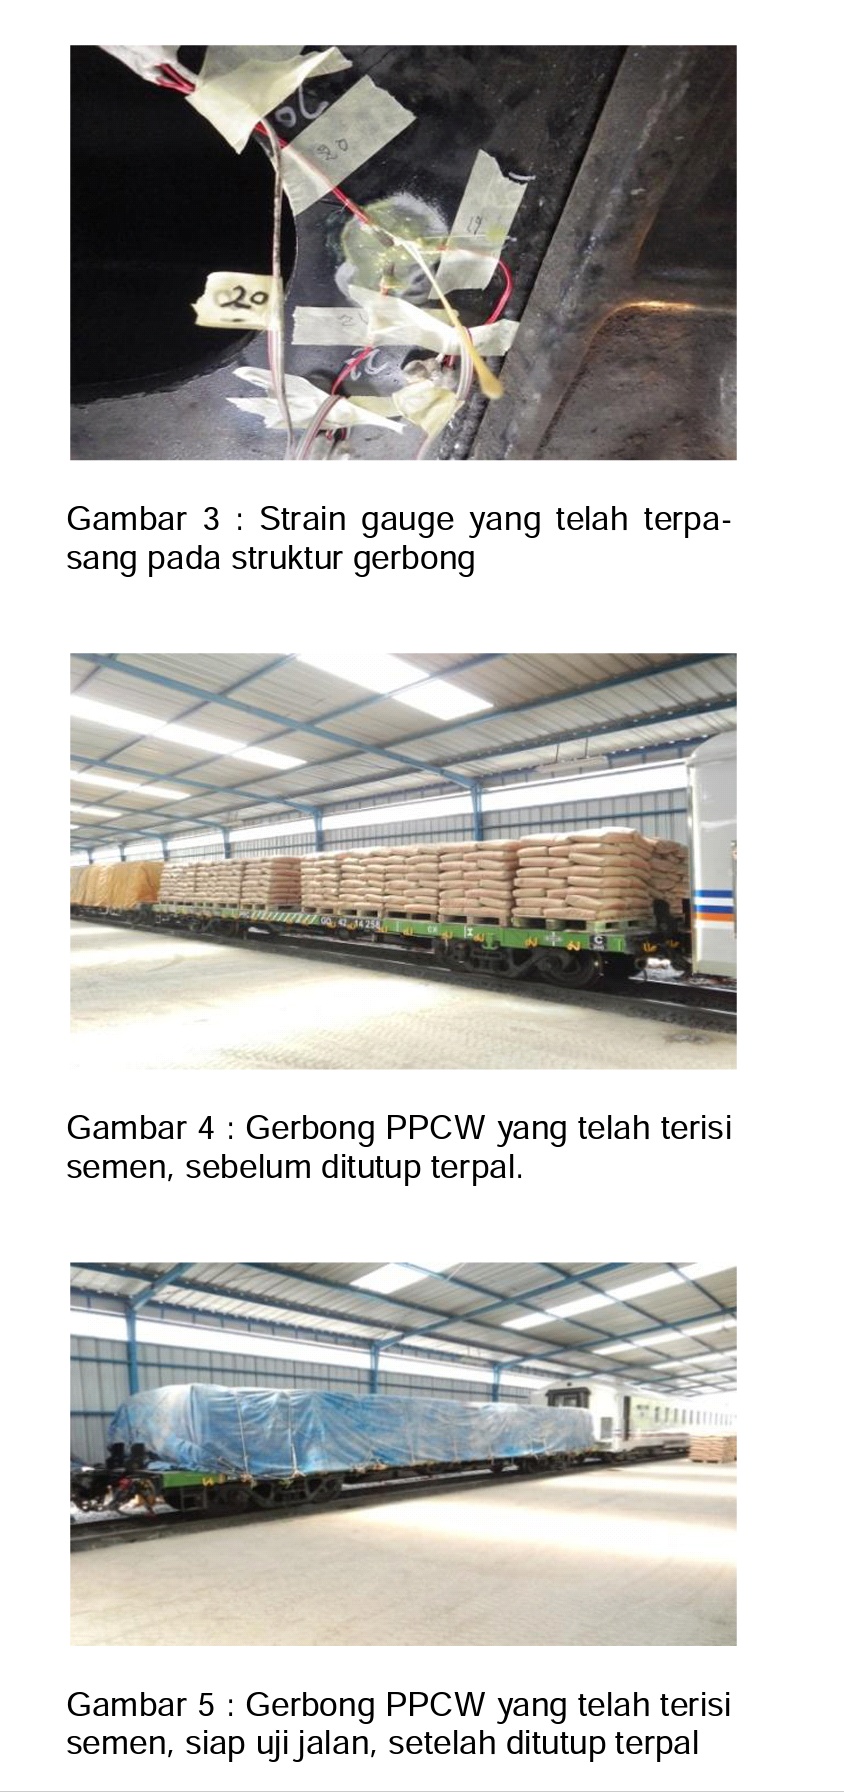 Pemasangan alat uji dan proses pengujian sarana gerbong datar PPCW 42 Ton dengan angkutan barang semen | Foto : BPPT